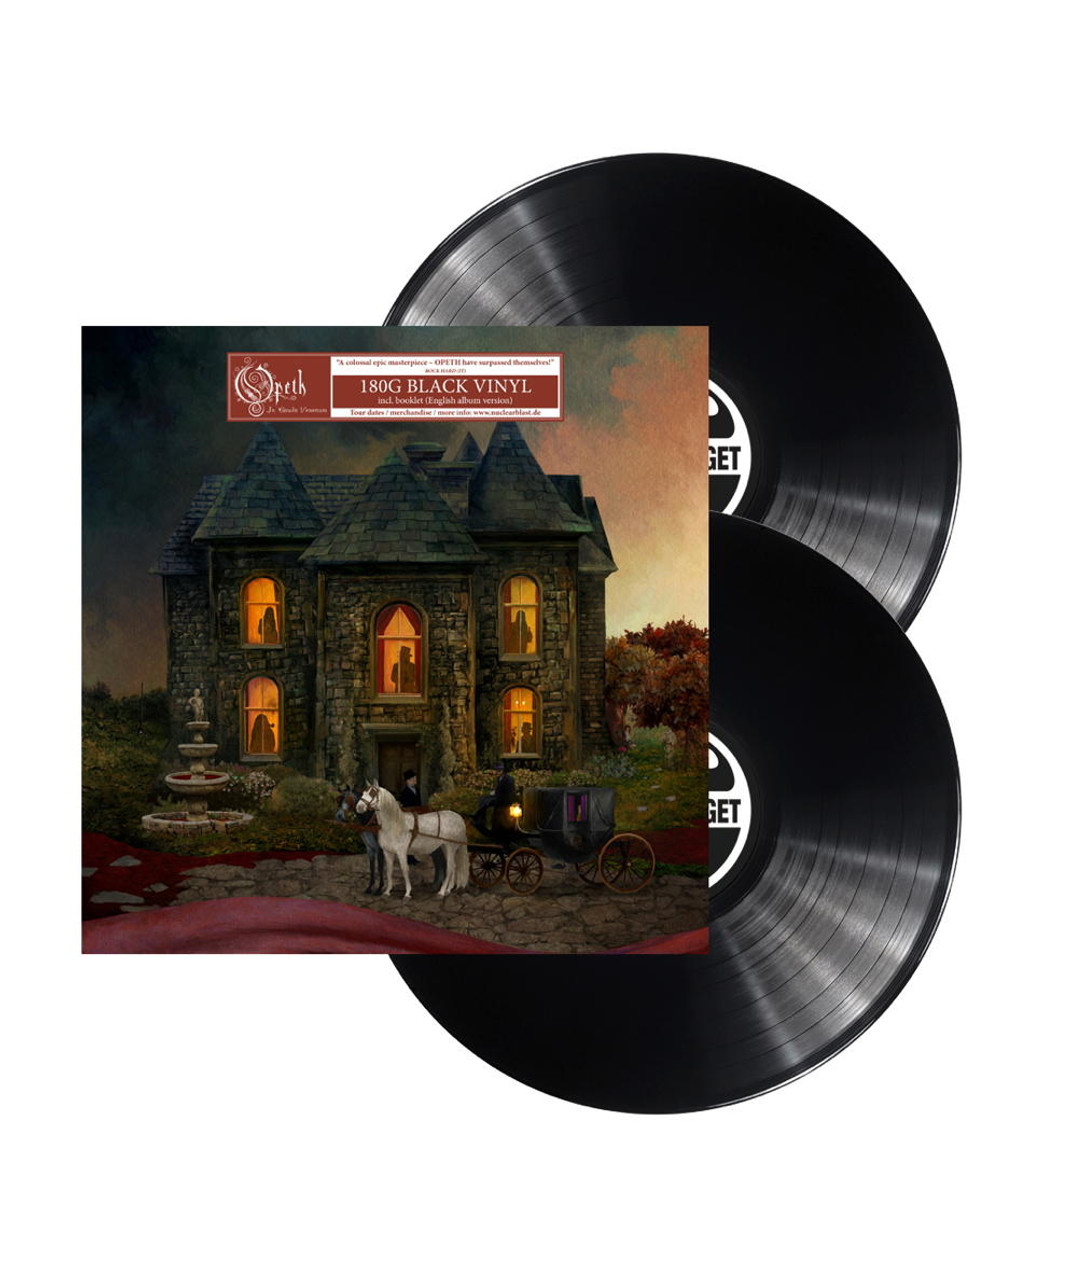 Opeth 'In Cauda Venenum' 2LP 180g Black Vinyl